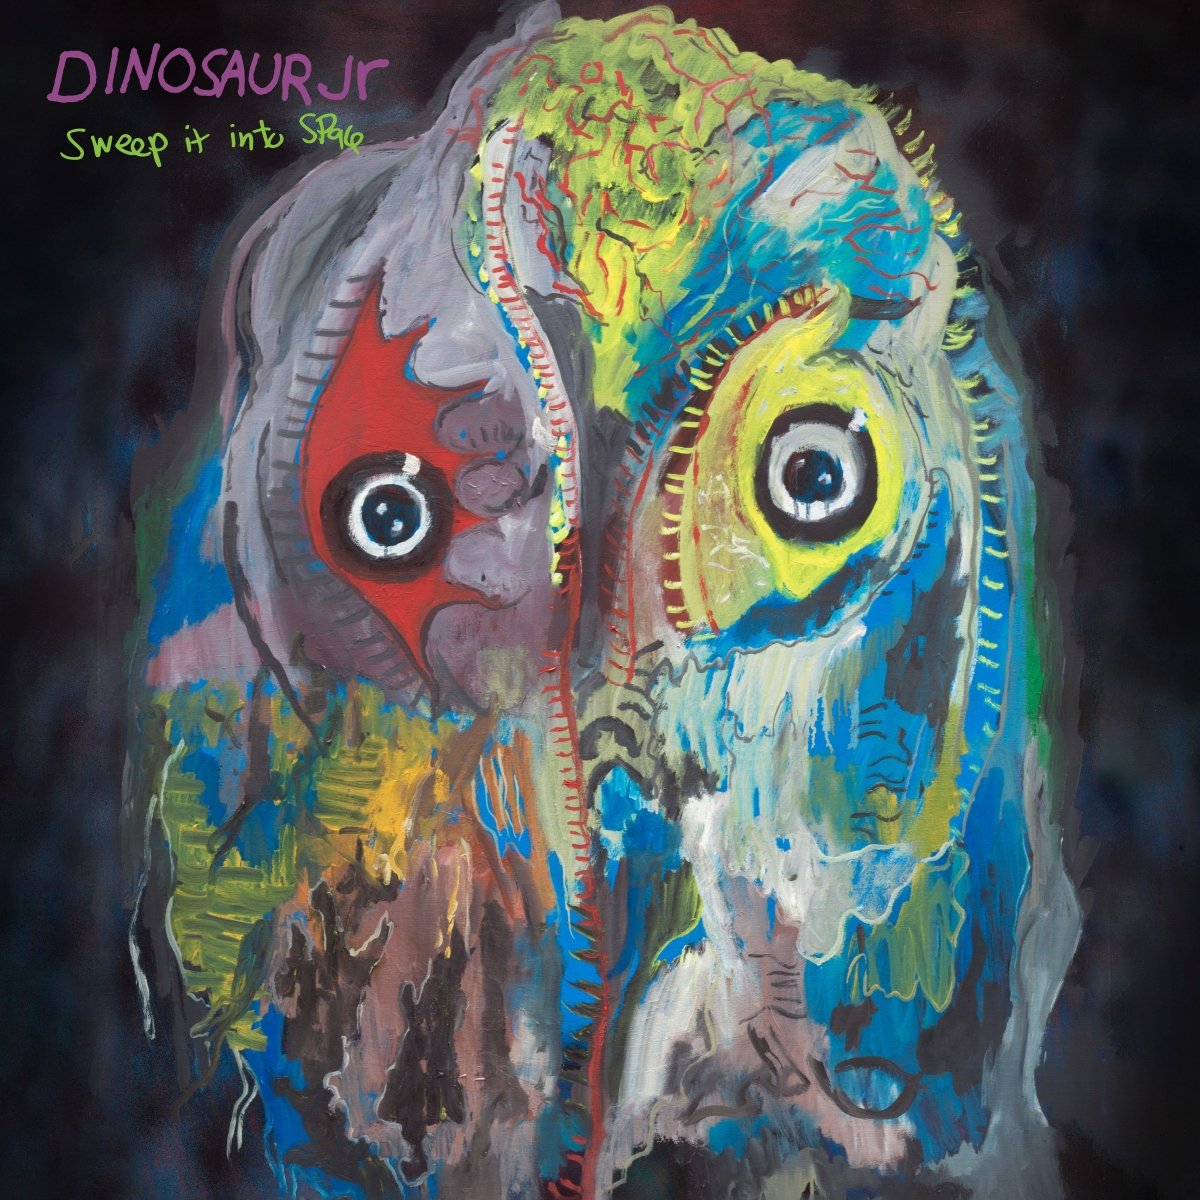 Dinosaur Jr - Sweep It Into Space [Indie Exclusive Vinyl]